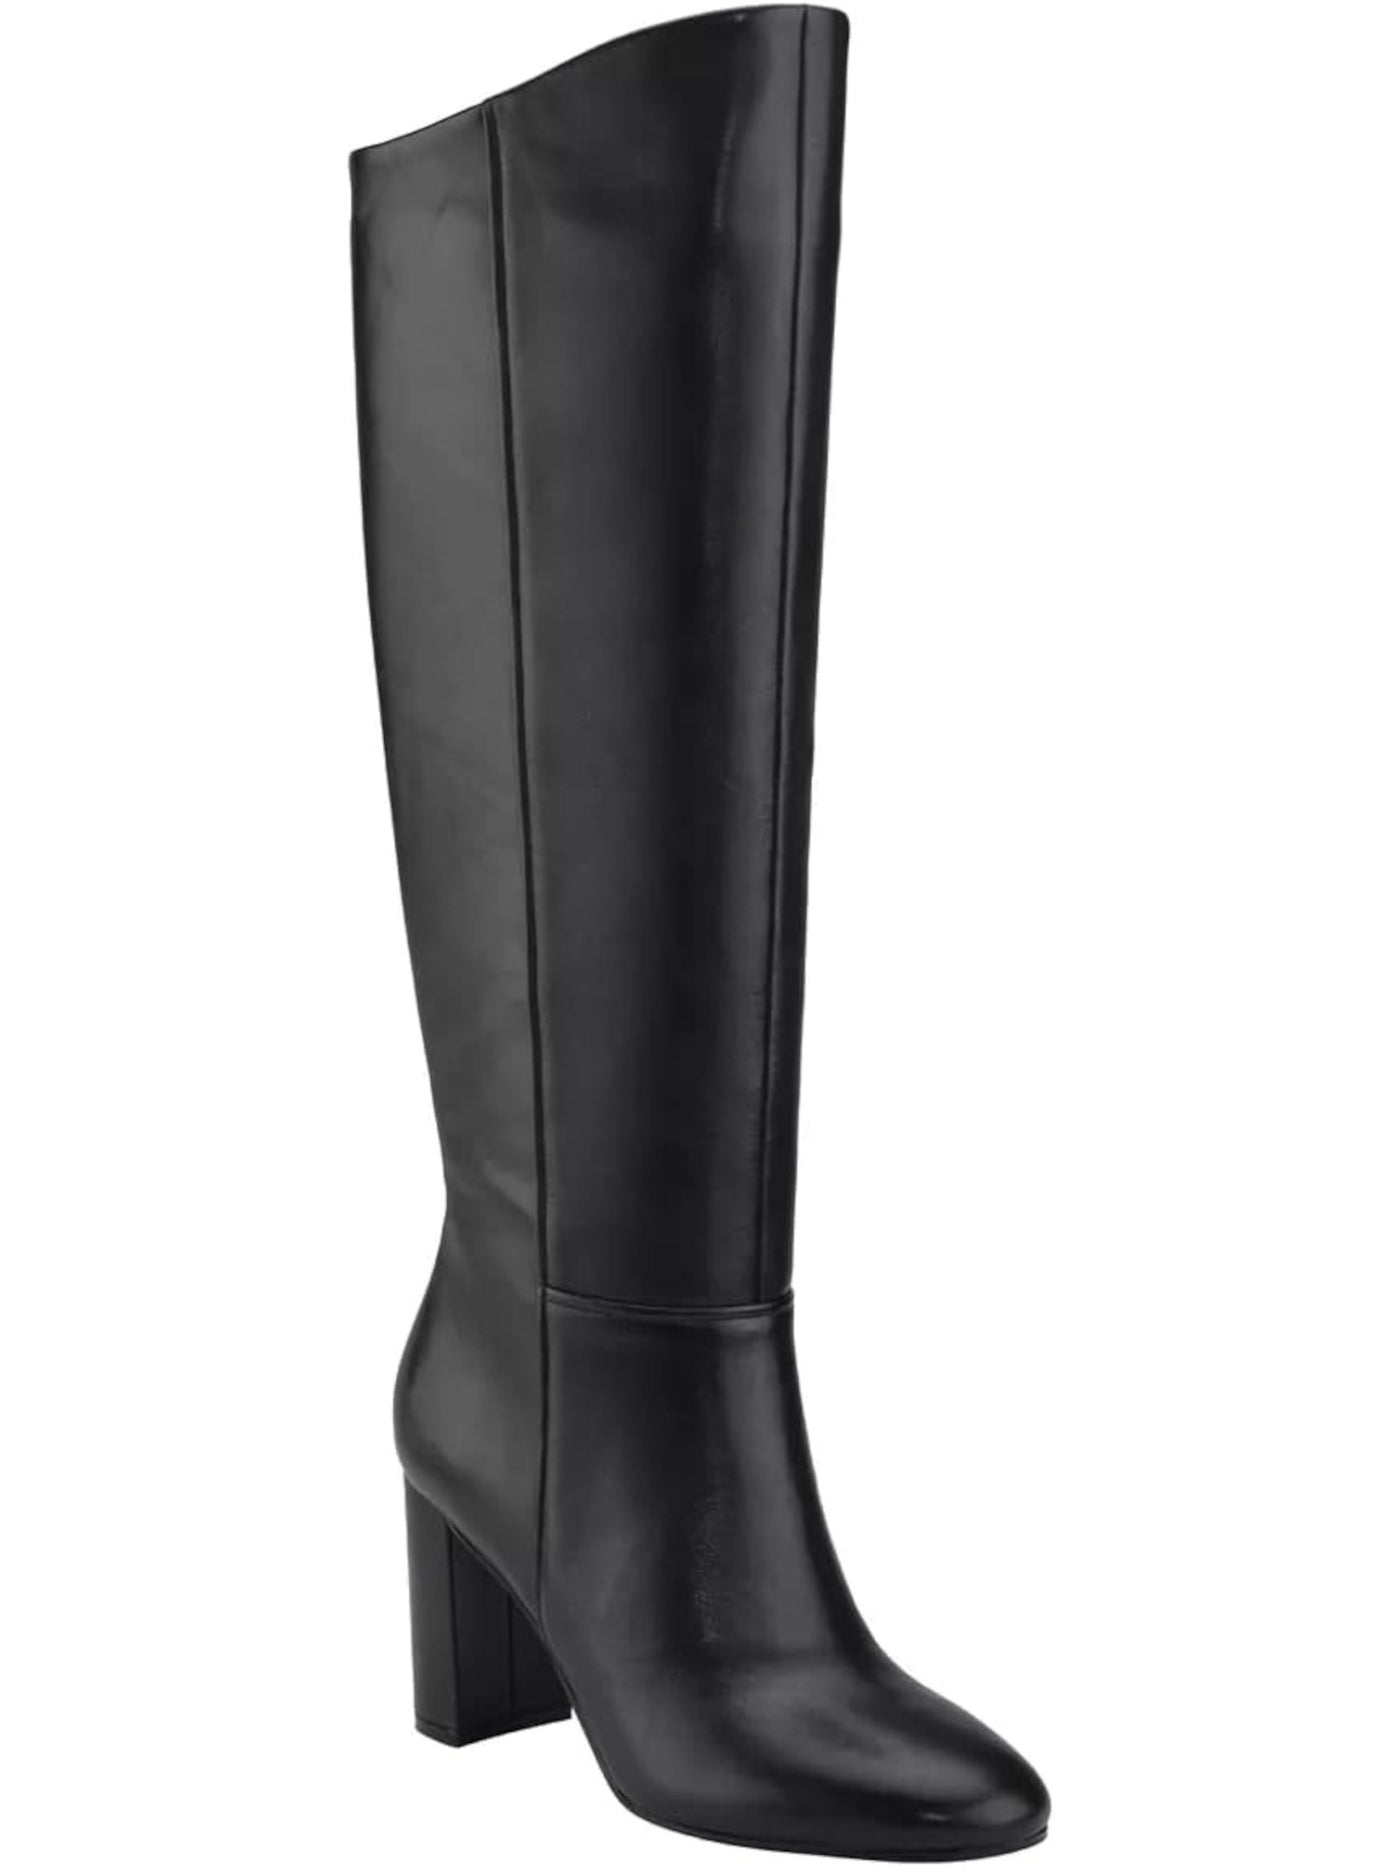 CALVIN KLEIN Womens Black Comfort Almay Round Toe Block Heel Zip-Up Leather Dress Boots 8 M